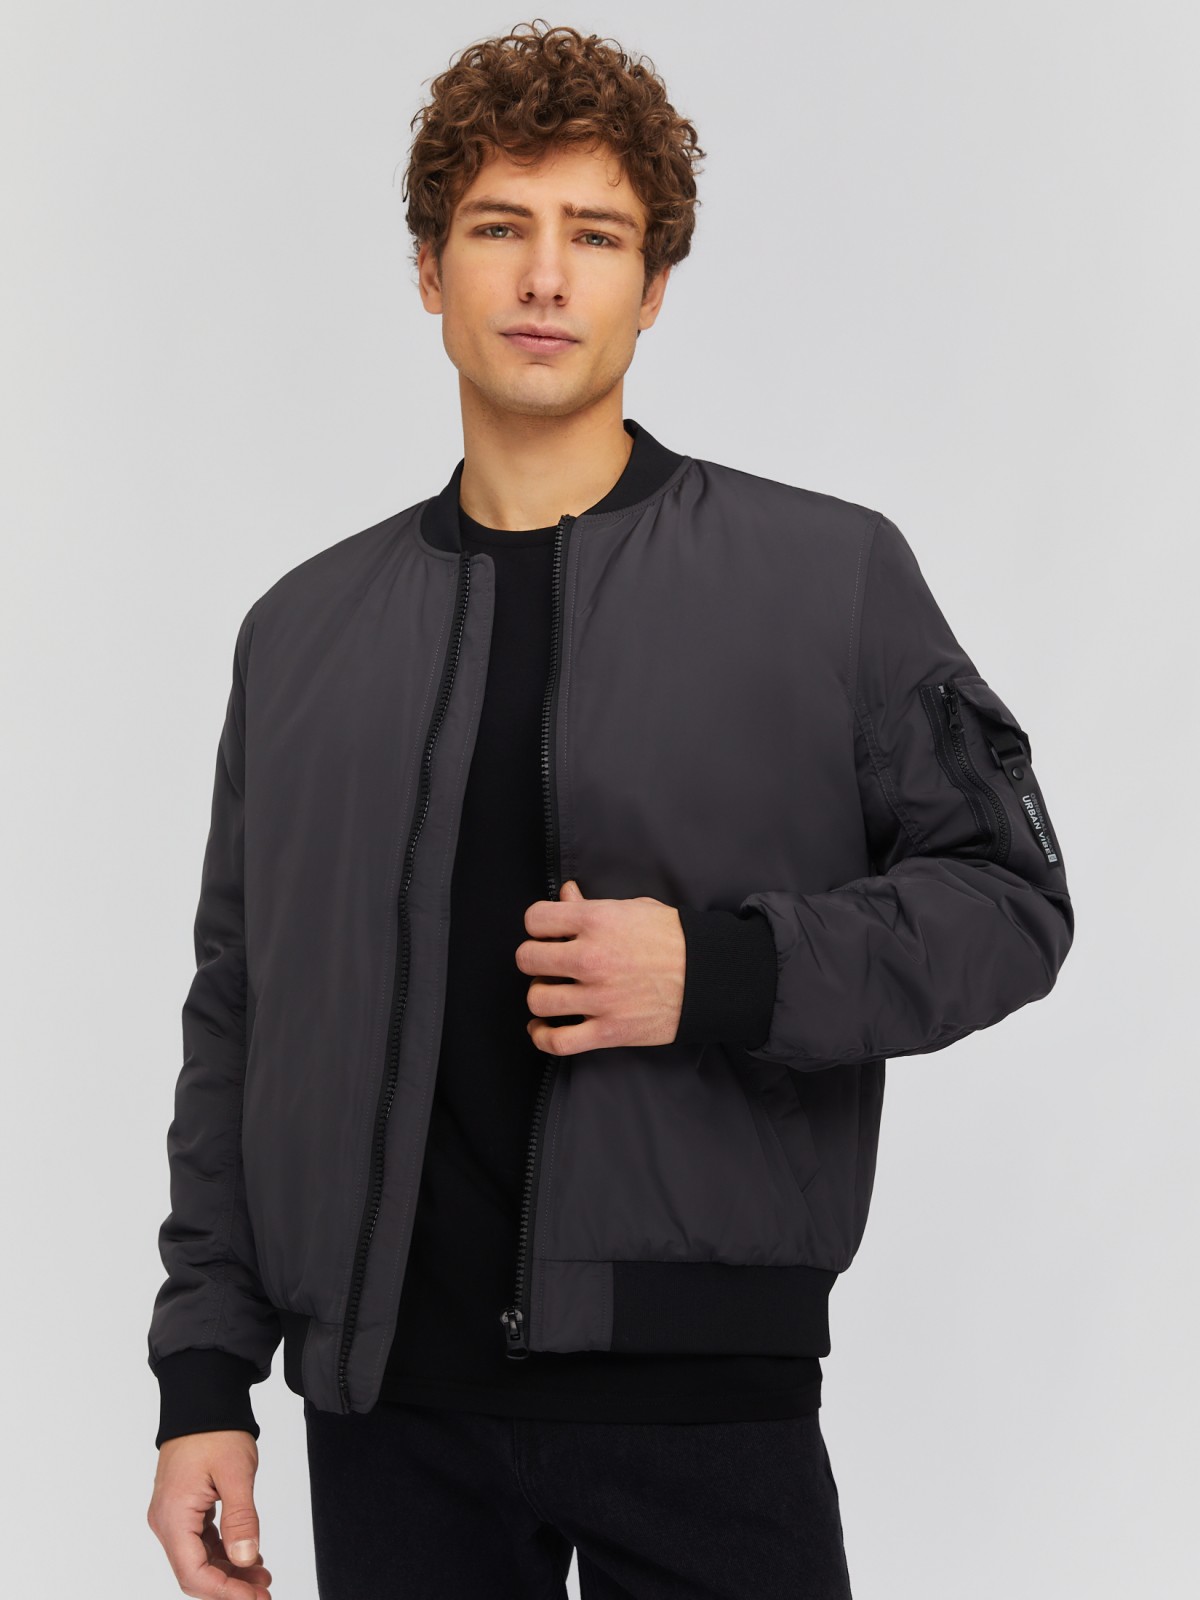 Утеплённая куртка-бомбер с воротником-стойкой zolla 014135102014, цвет серый, размер M - фото 1